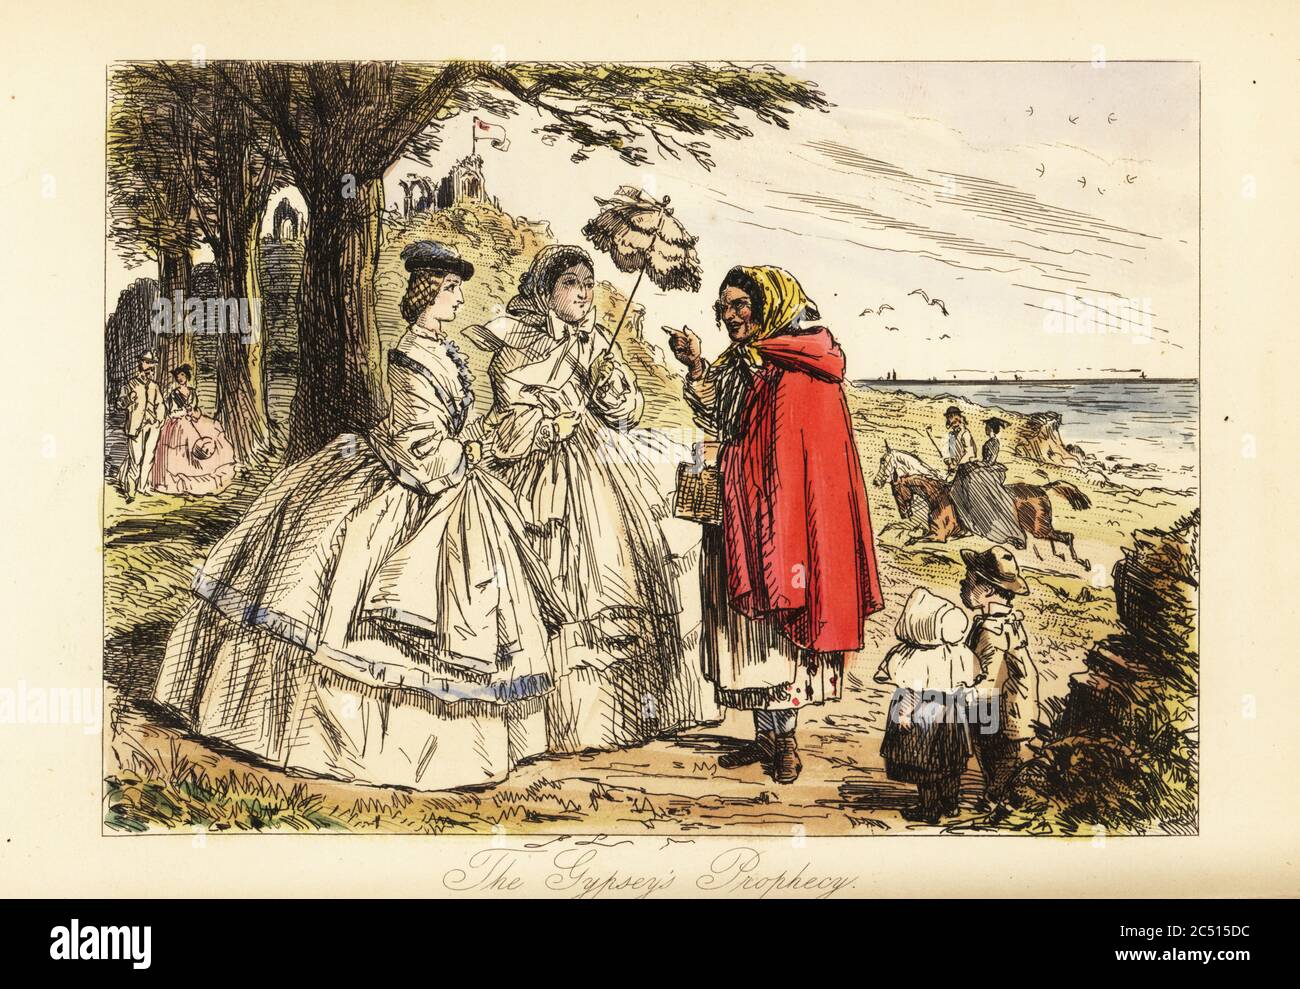 Rosa McDermott und ihre Mutter hören eine Prophezeiung von einer römischen Wahrsagerin während eines Spaziergangs. Sie tragen breite, mit einem Reif behackte Unterklatschkutten. Im Hintergrund fährt ein Paar an der Küste entlang in einem Badeort. (Gypseys Prophezeiung auf Gravur). Handkolorierter Stahlstich nach einer Illustration von John Leech aus Robert Smith Surtees’ Plain or Ringlets?, Bradbury und Evans London, 1860. Leech (1817-1864) war ein englischer Karikaturist und Illustrator, der vor allem für seine Arbeit für das Punch Magazin bekannt war. Stockfoto